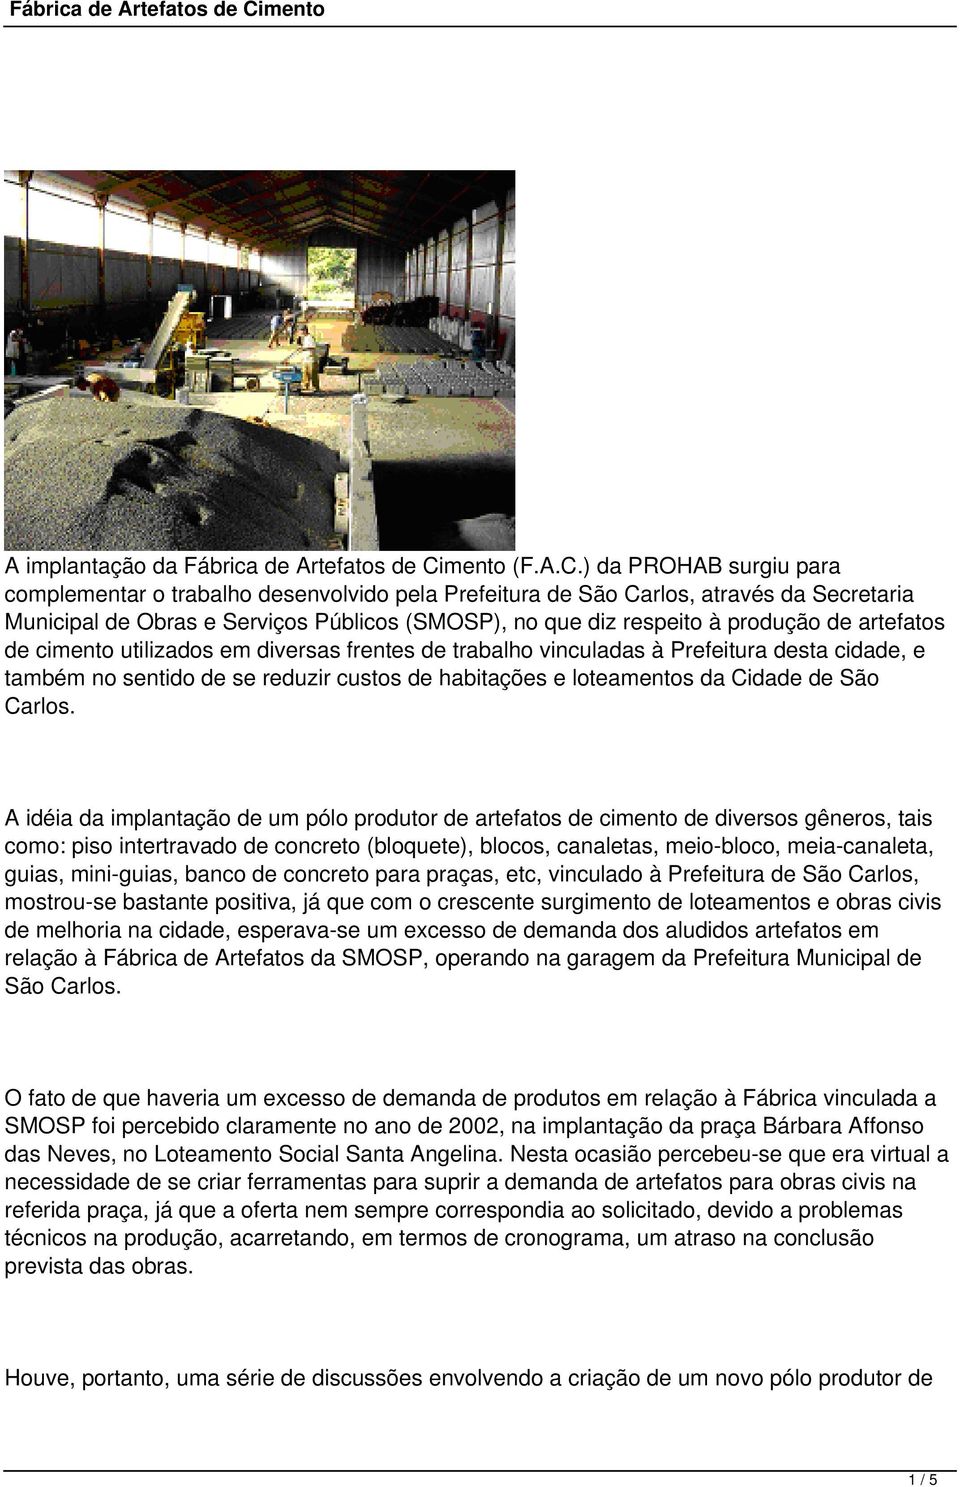 ) da PROHAB surgiu para complementar o trabalho desenvolvido pela Prefeitura de São Carlos, através da Secretaria Municipal de Obras e Serviços Públicos (SMOSP), no que diz respeito à produção de